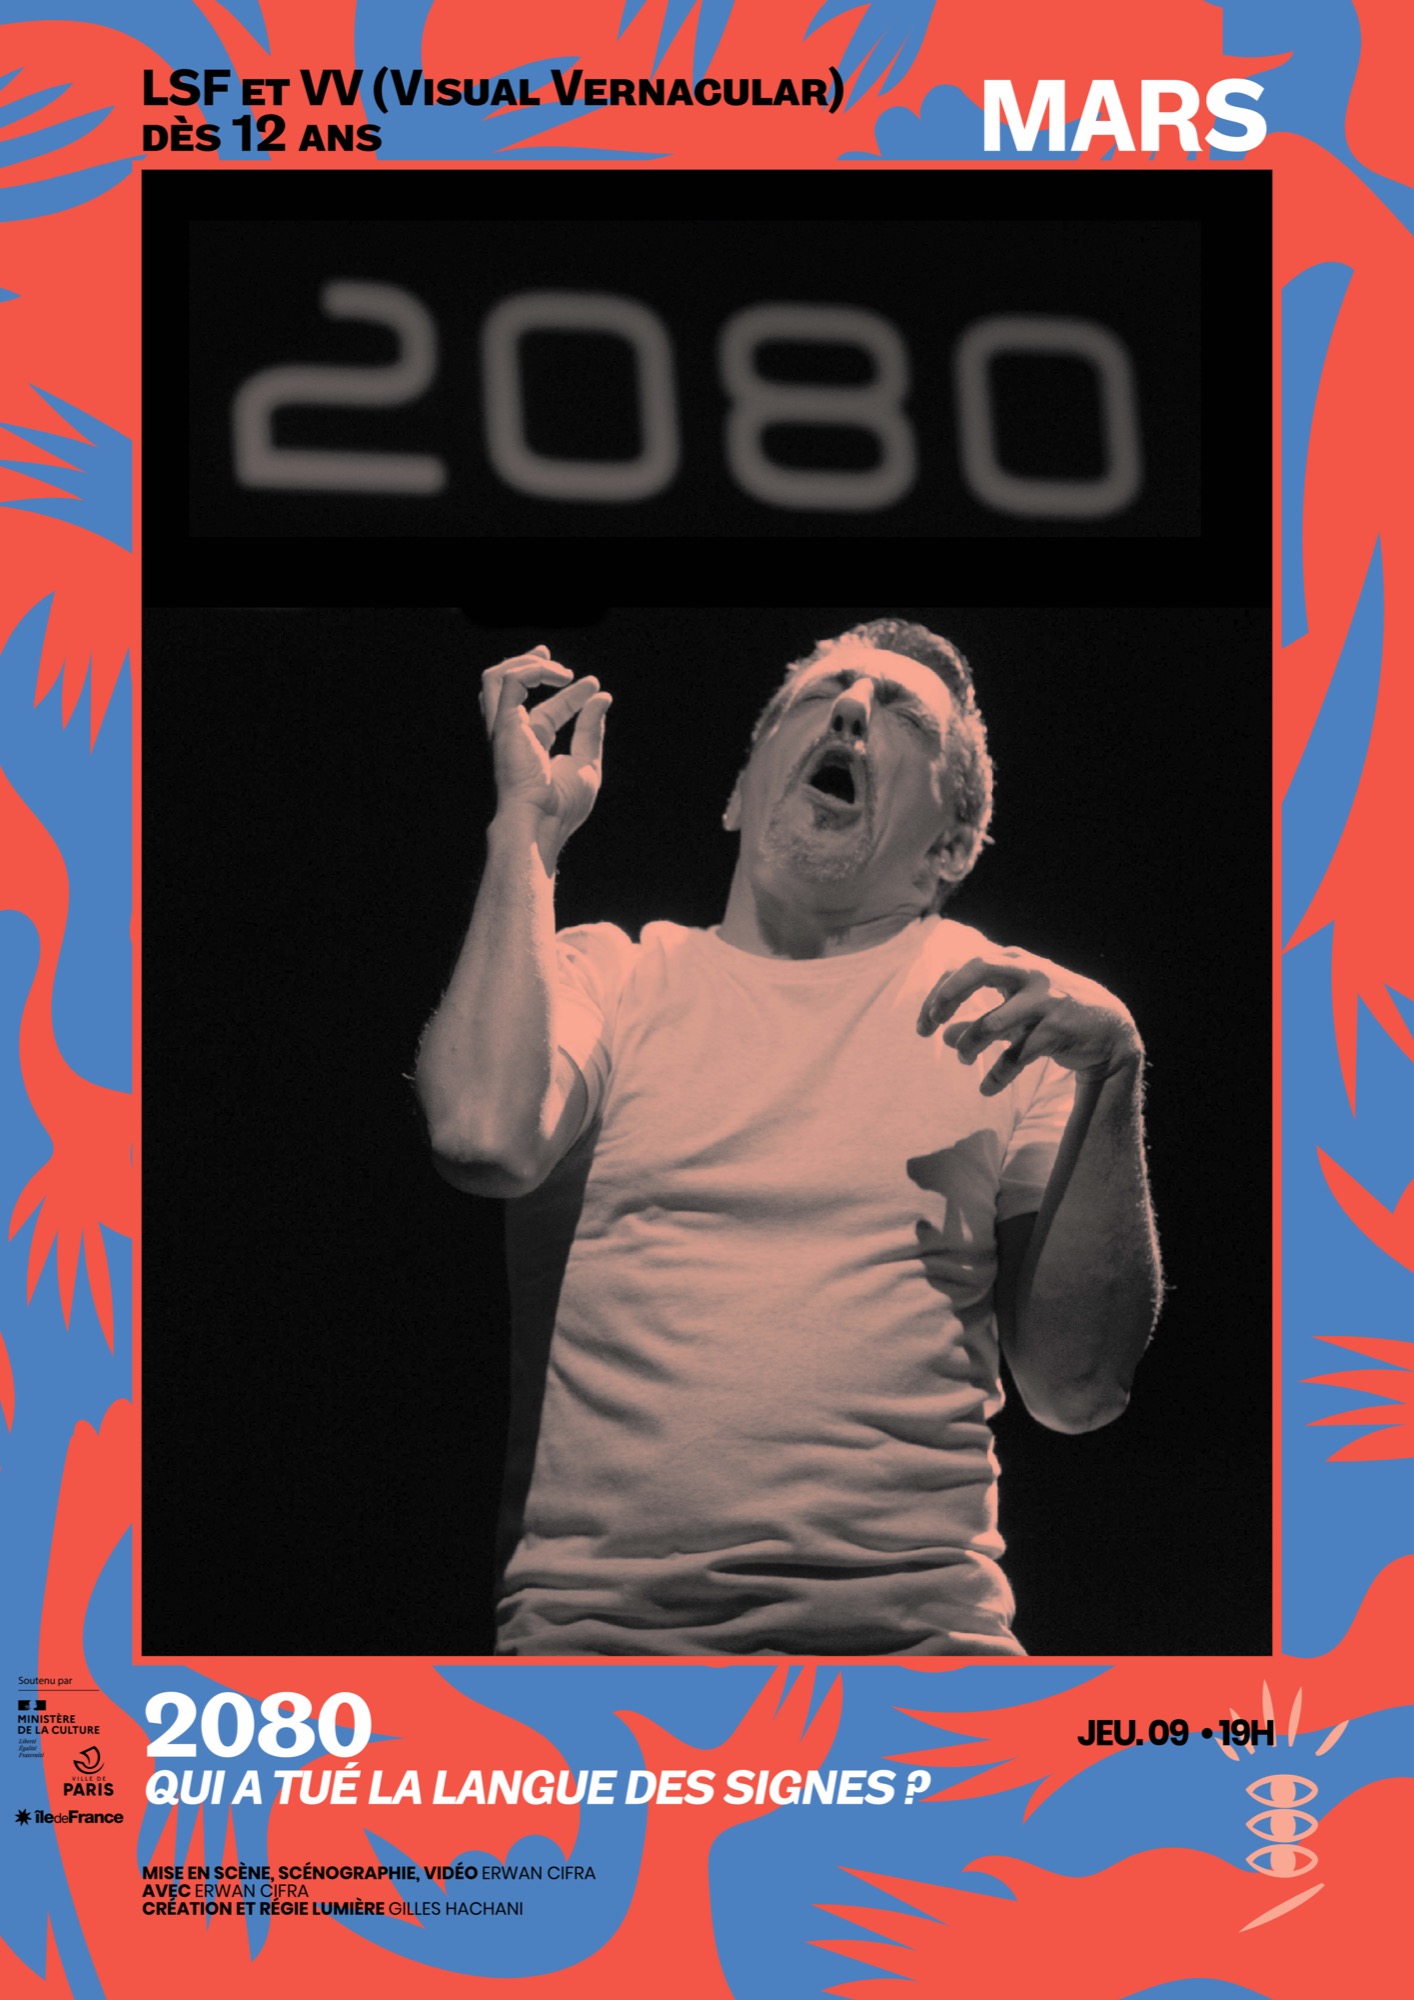 2080